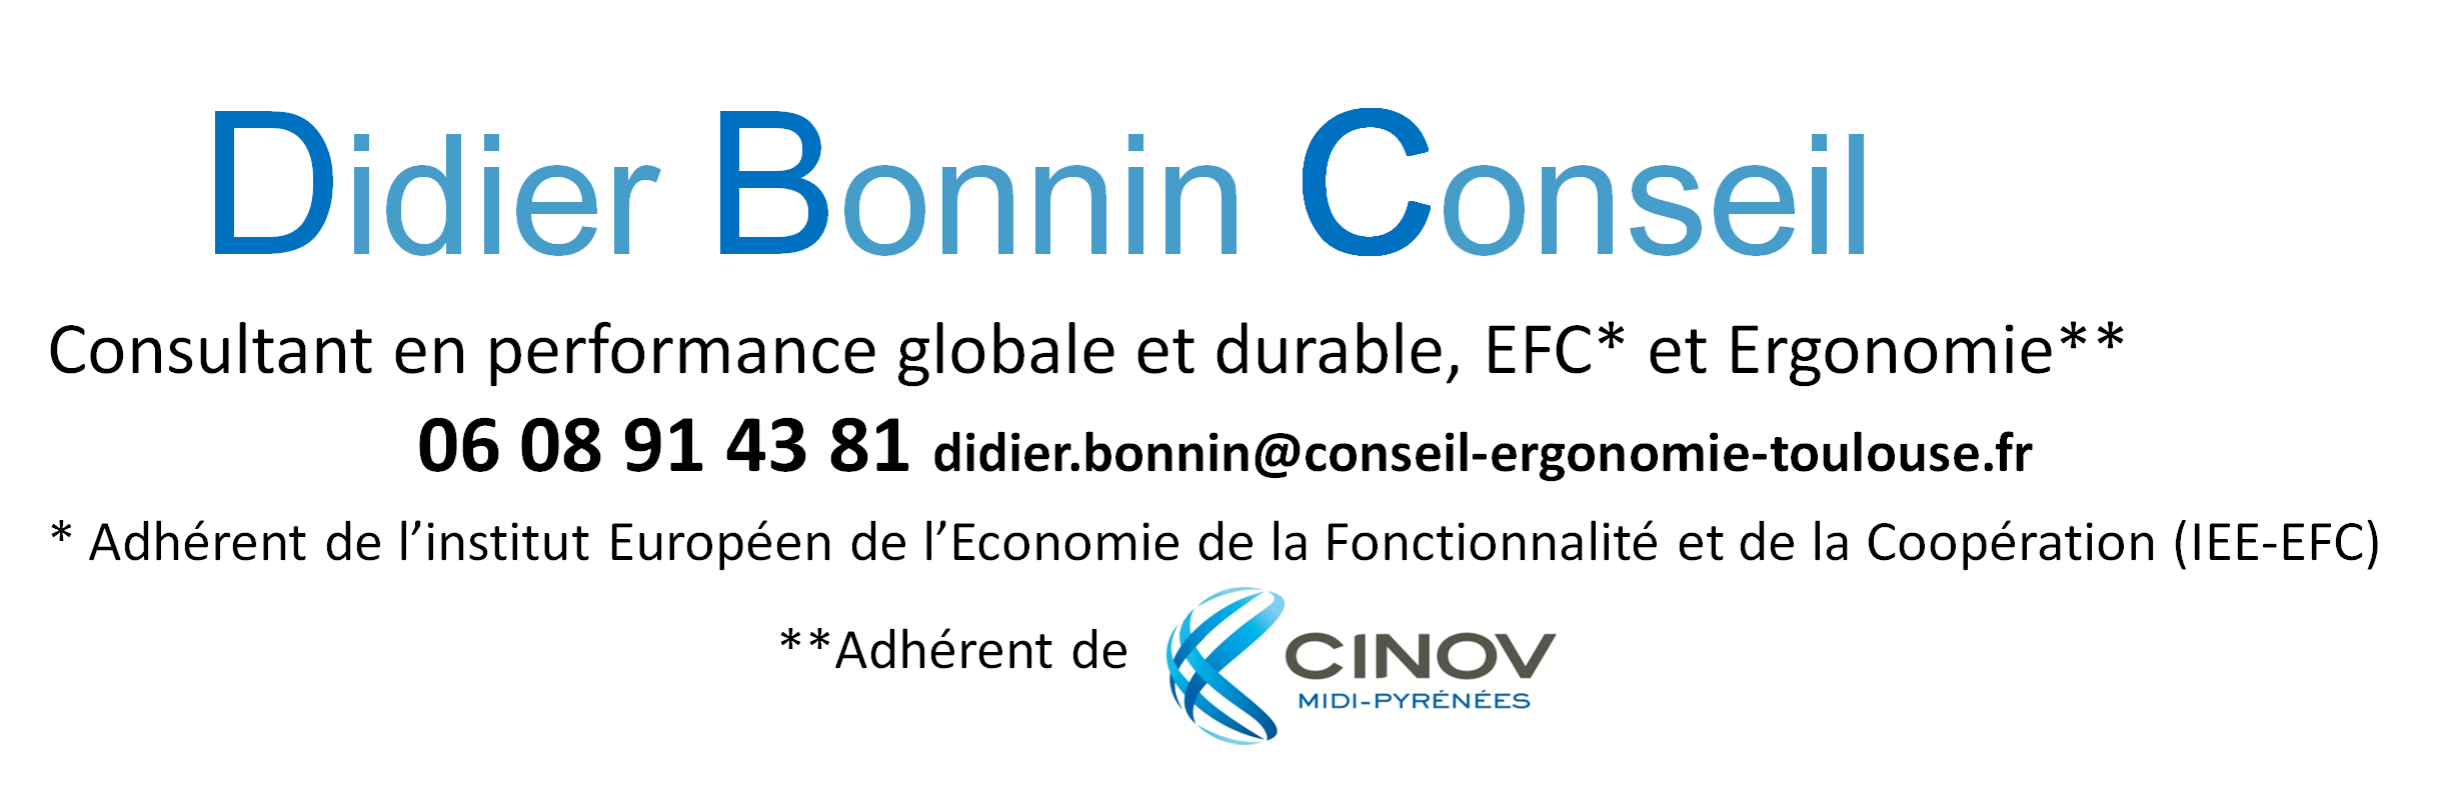 Didier Bonnin Conseil